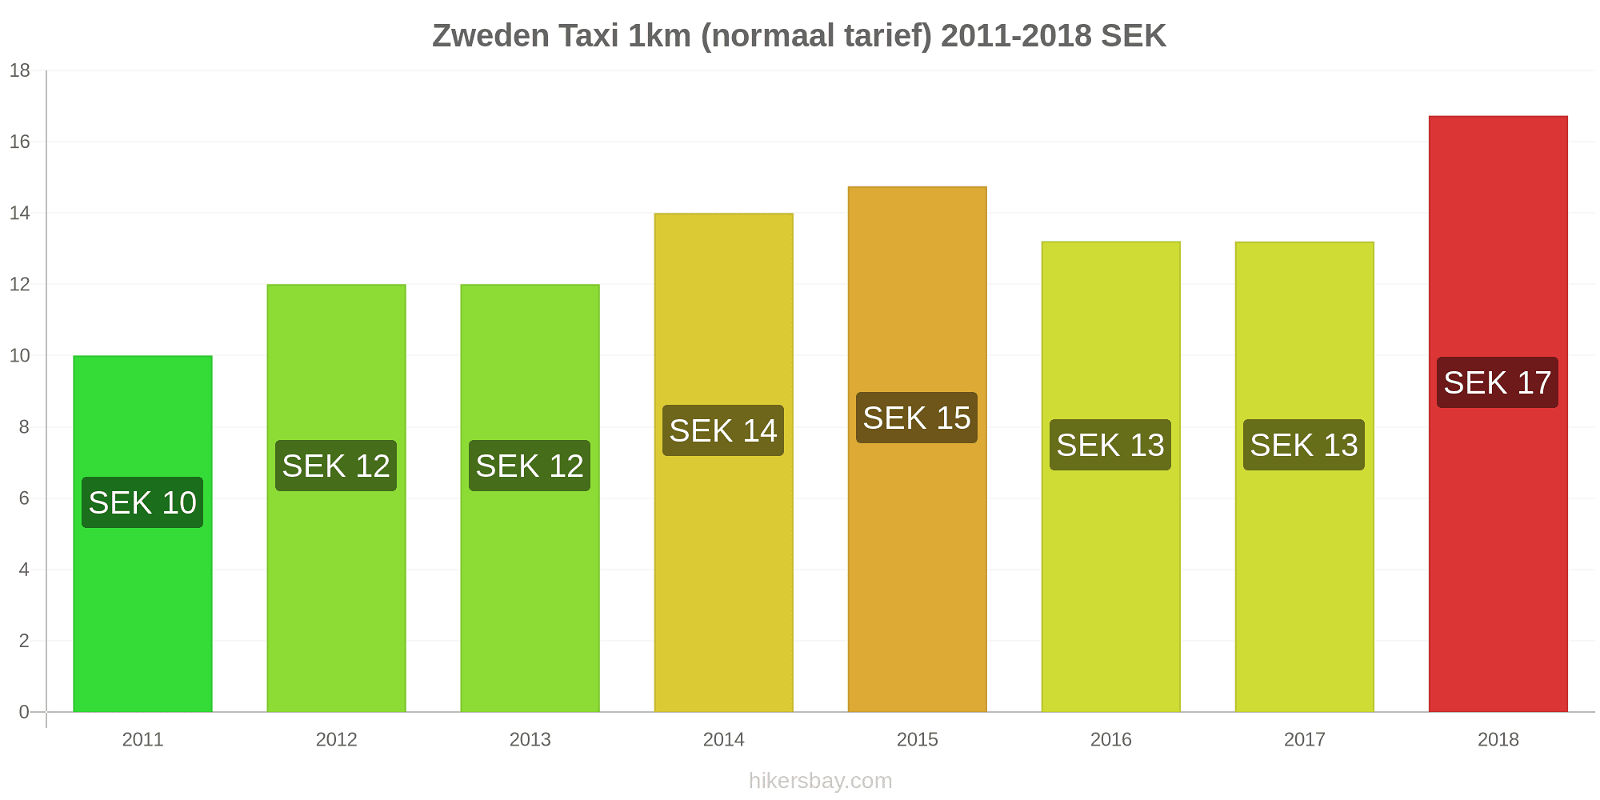 Zweden prijswijzigingen Taxi 1km (normaal tarief) hikersbay.com